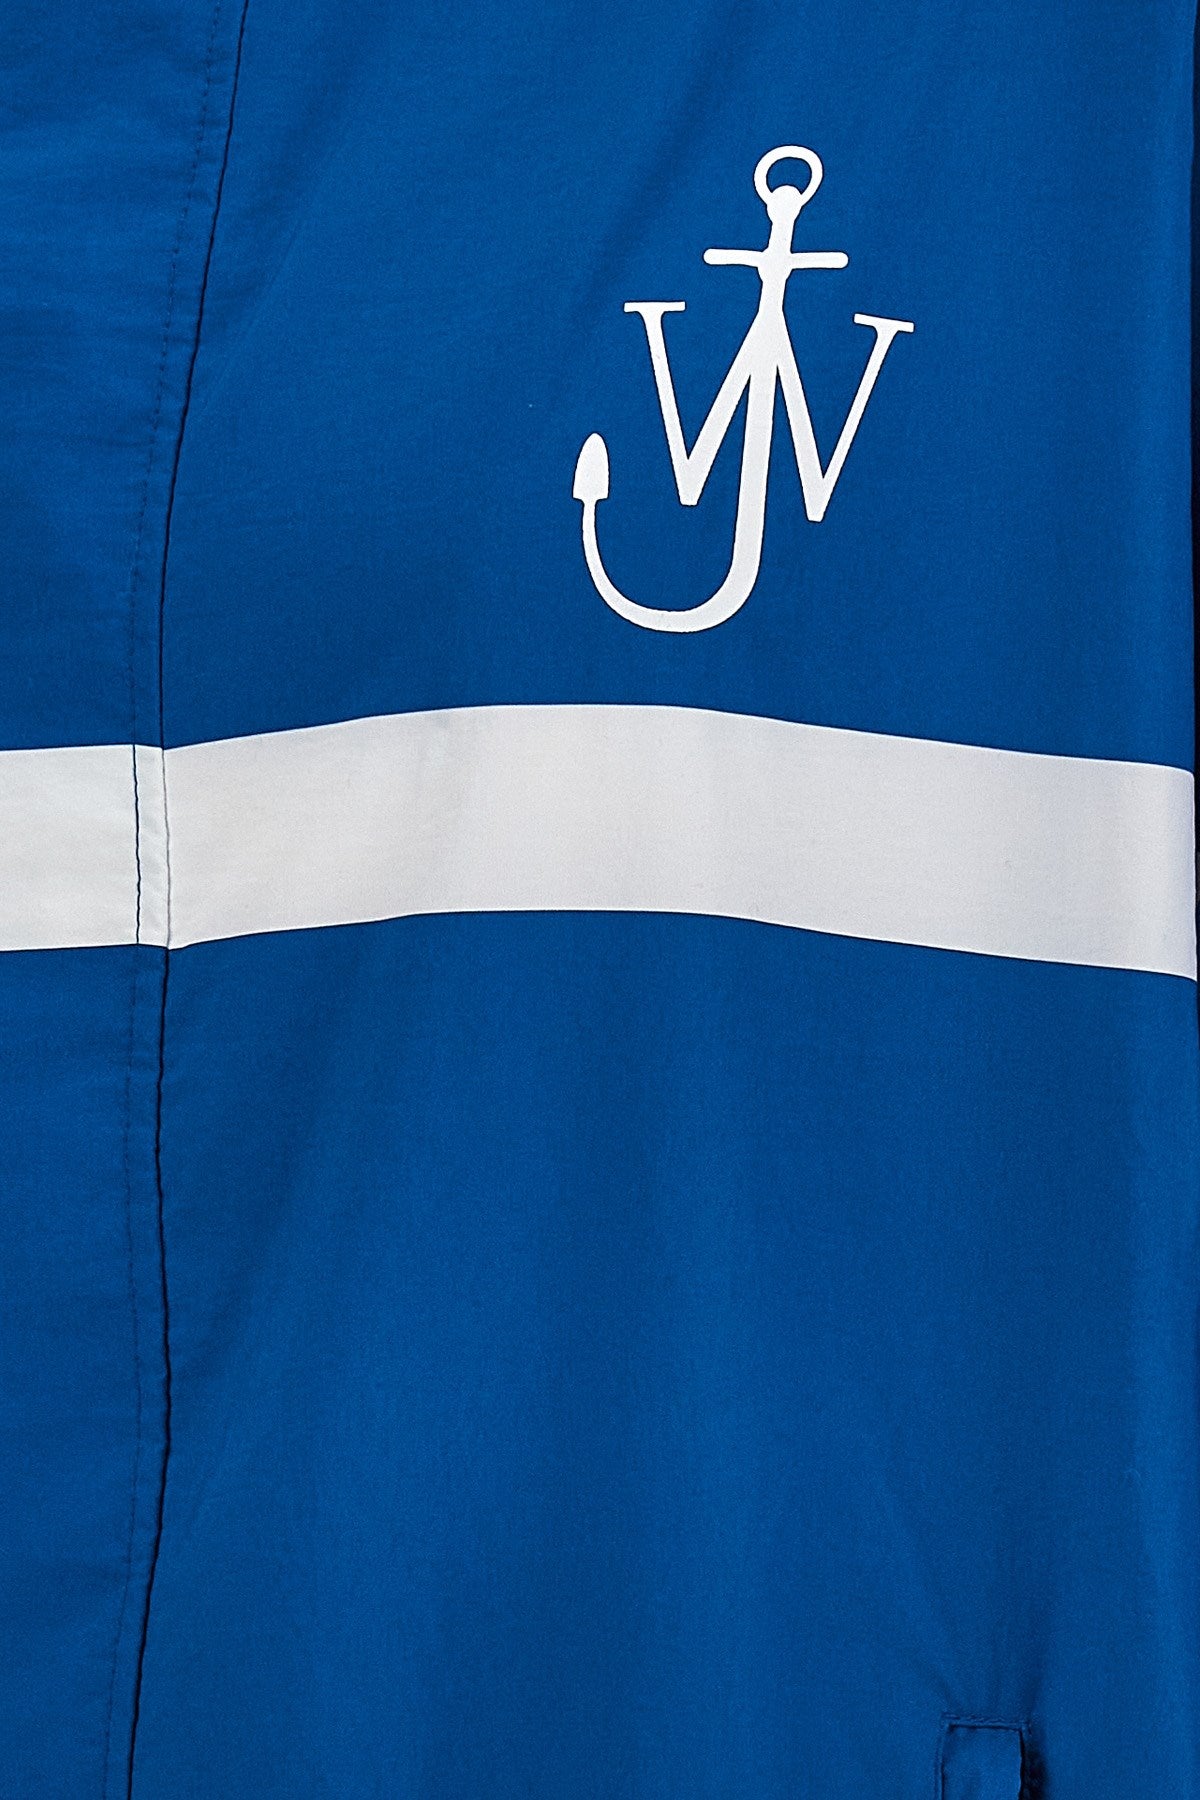 Shop Jw Anderson J.w.anderson Men Logo Print Striped Jacket In Blue